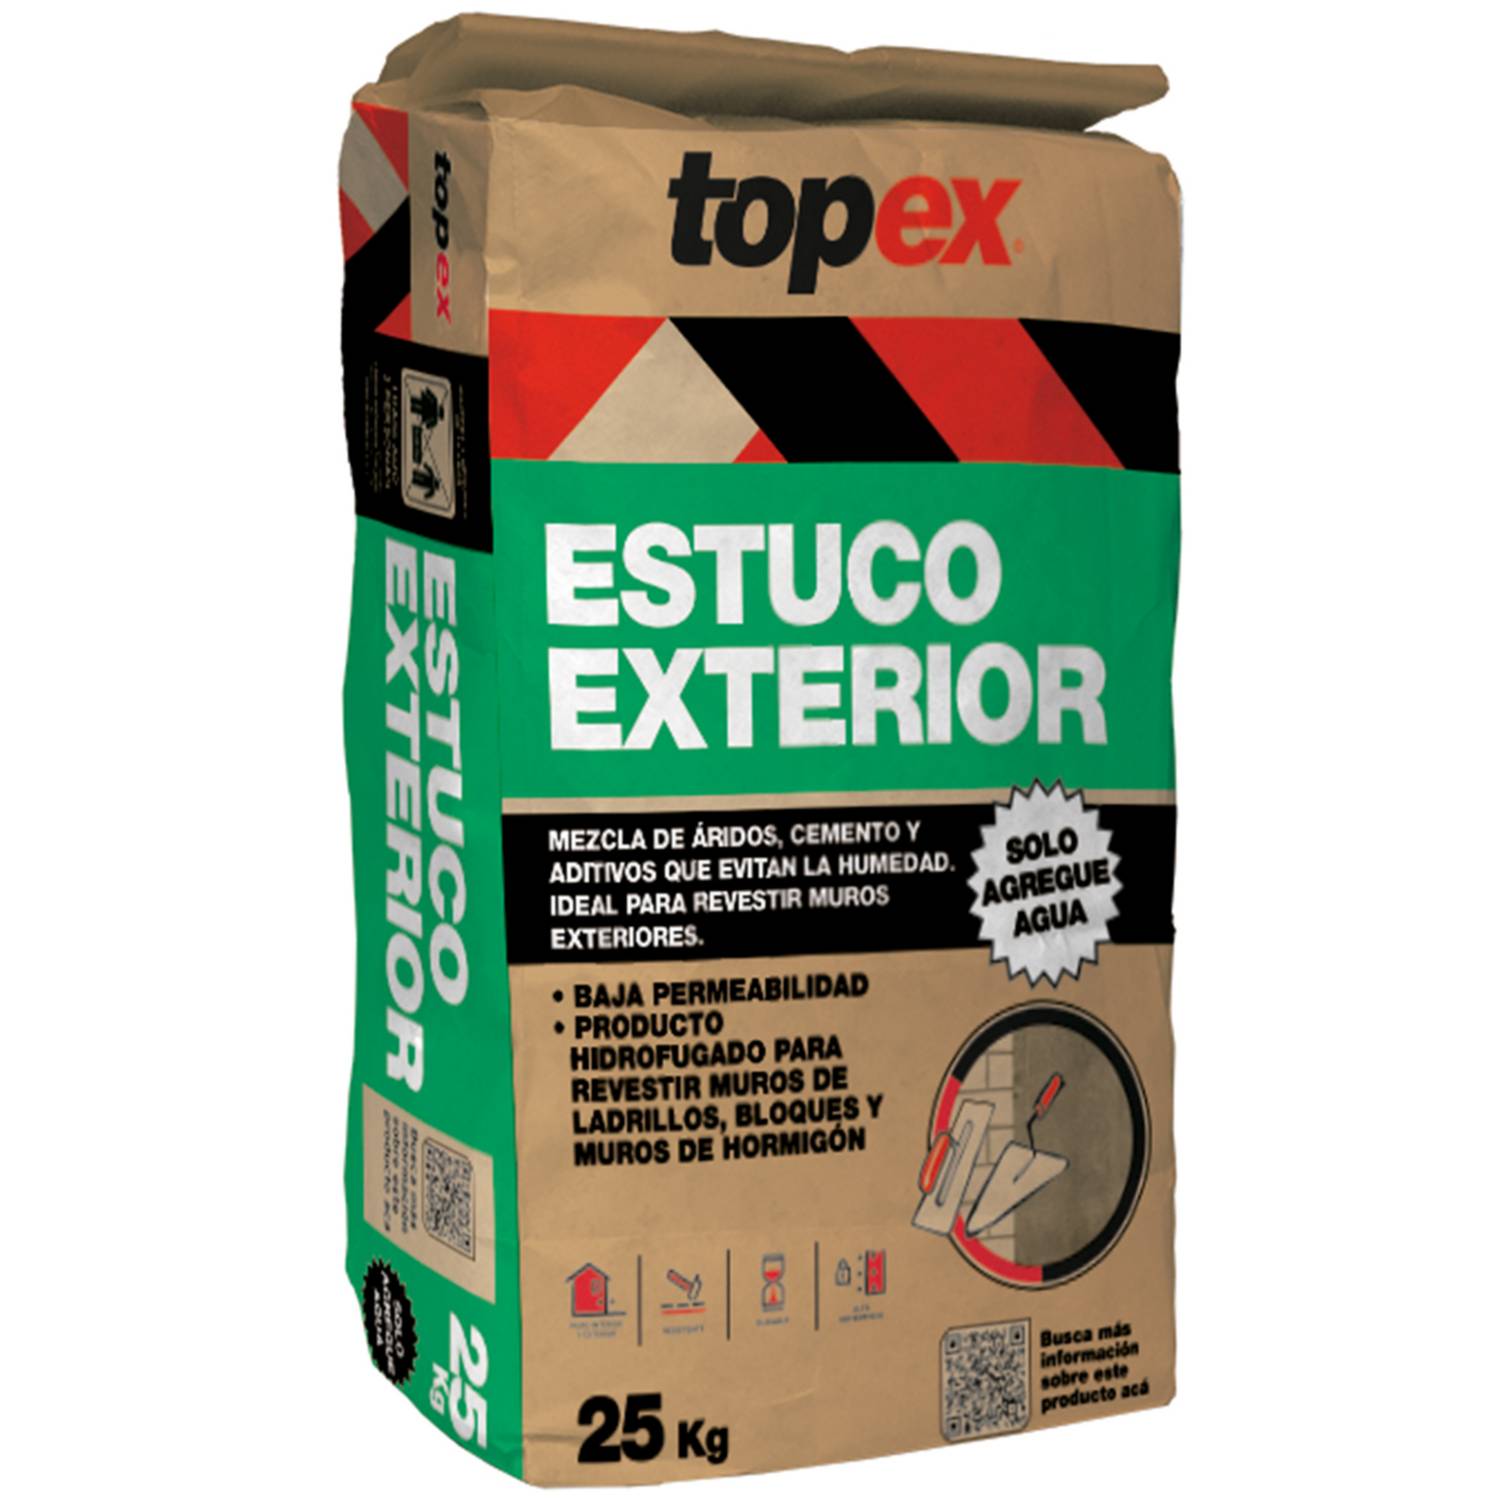 Topex estuco exterior 25 kg | Sodimac